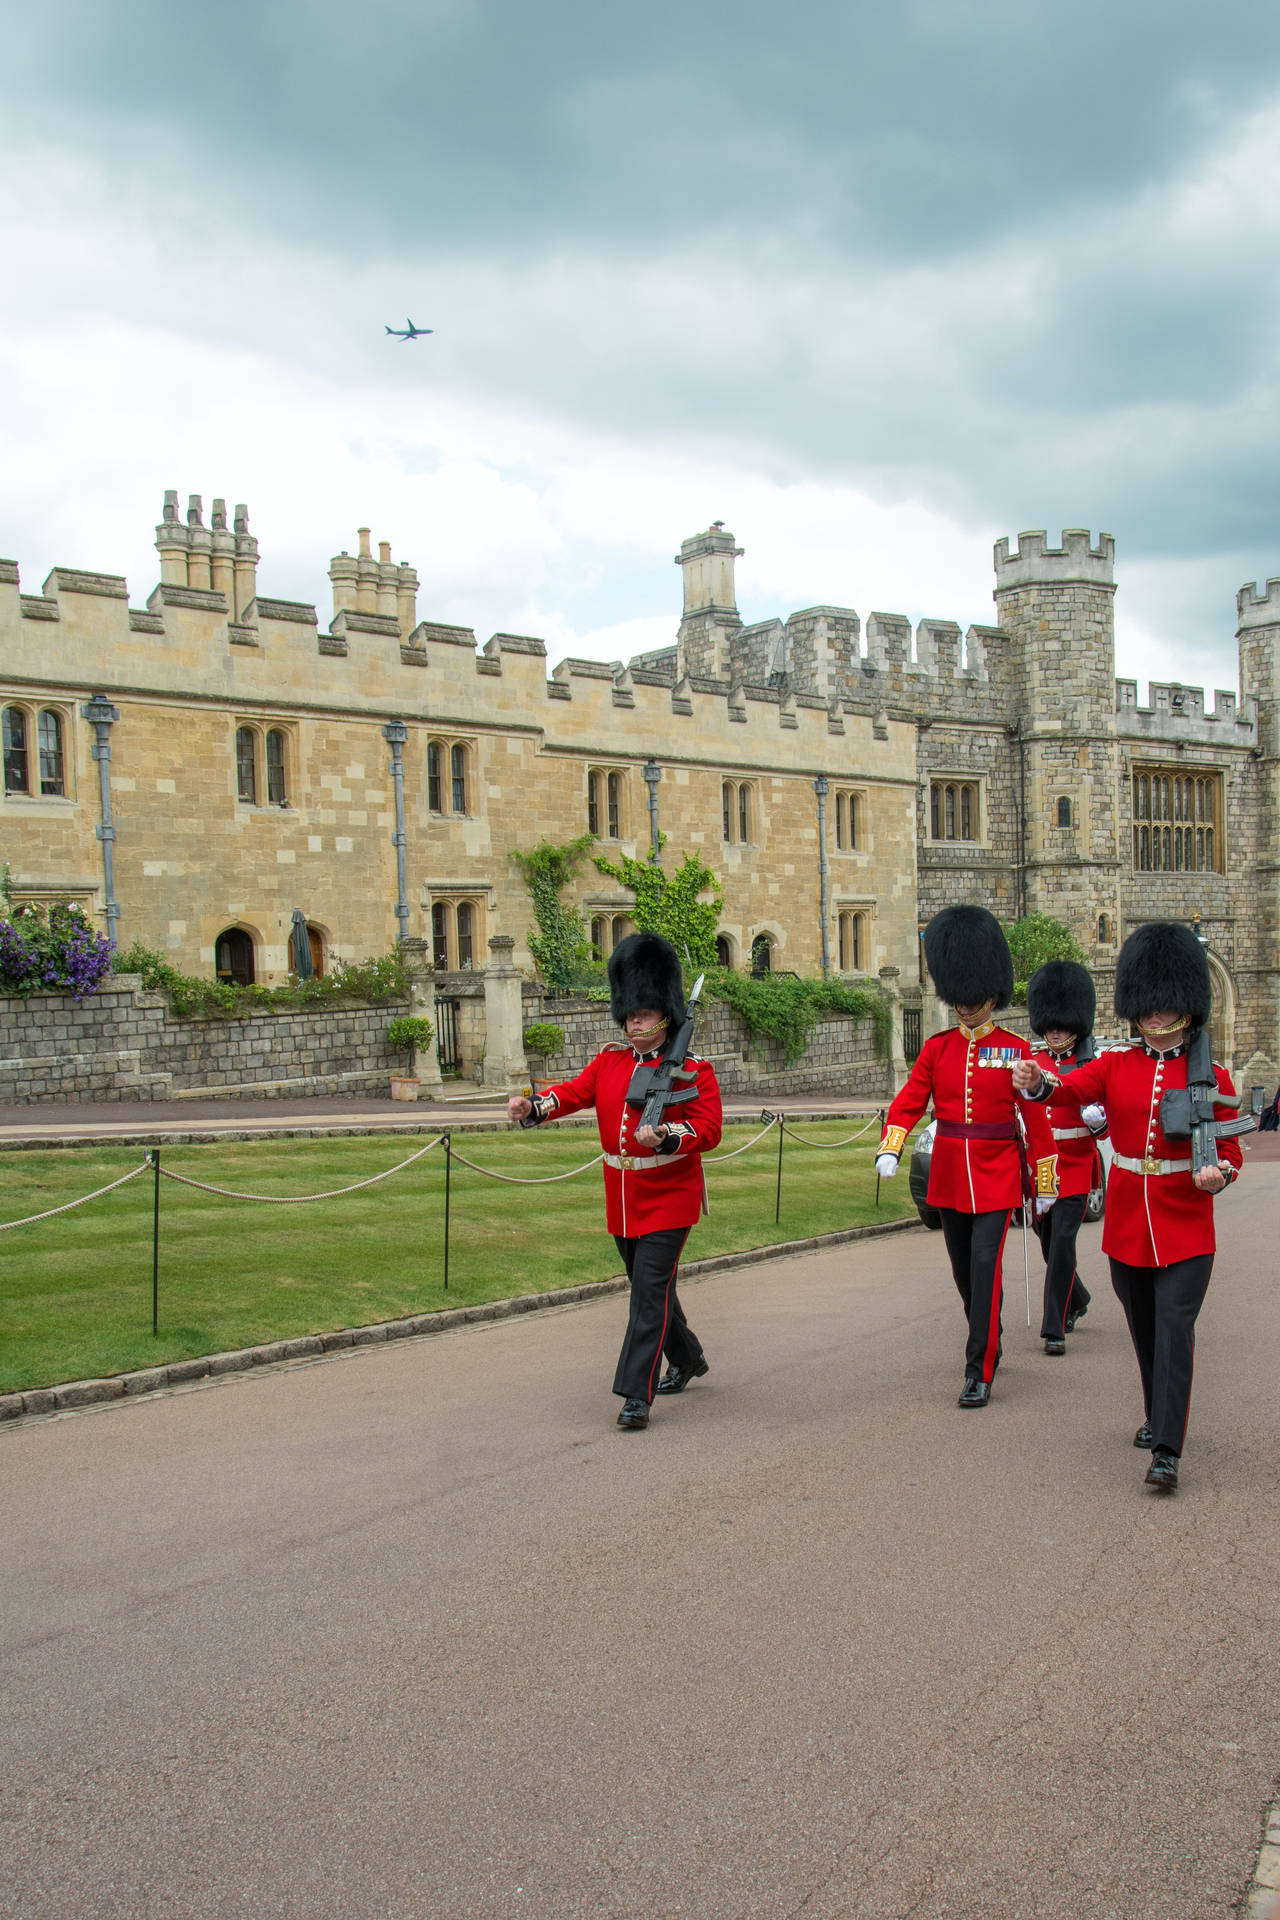 Guards On Patrol At Windsor Castle Wallpaper